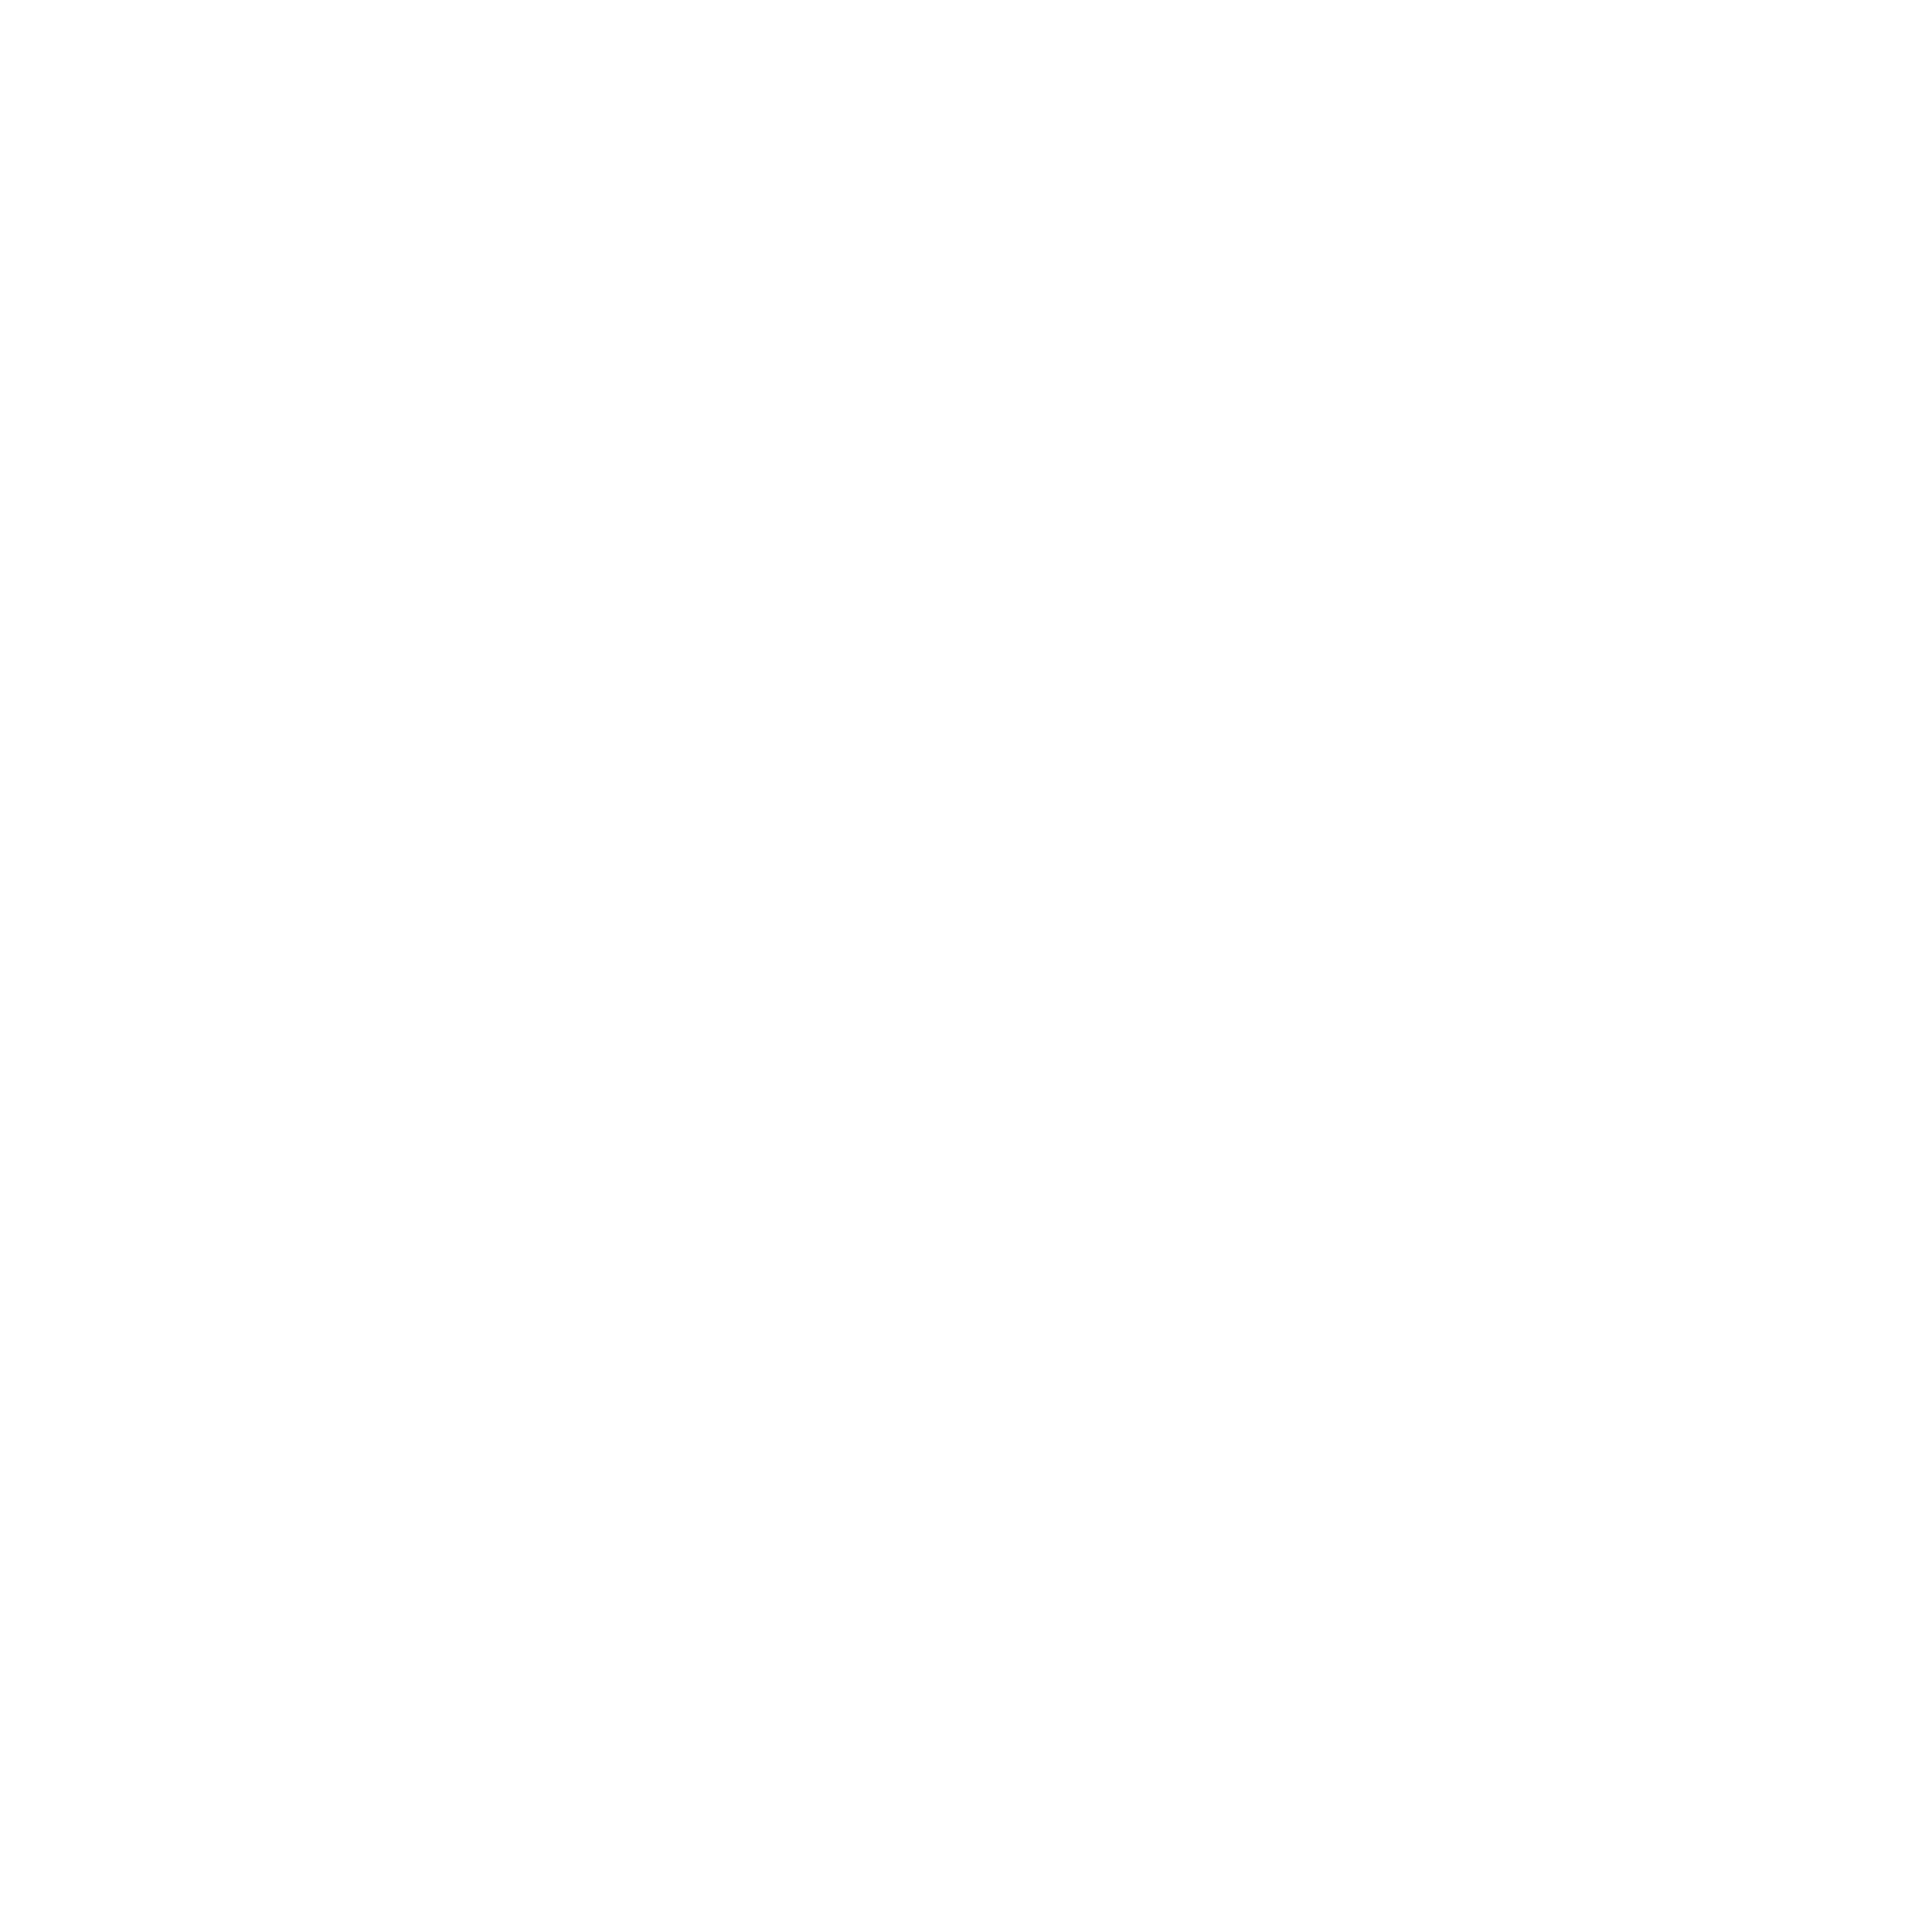 Groupe Hamecher